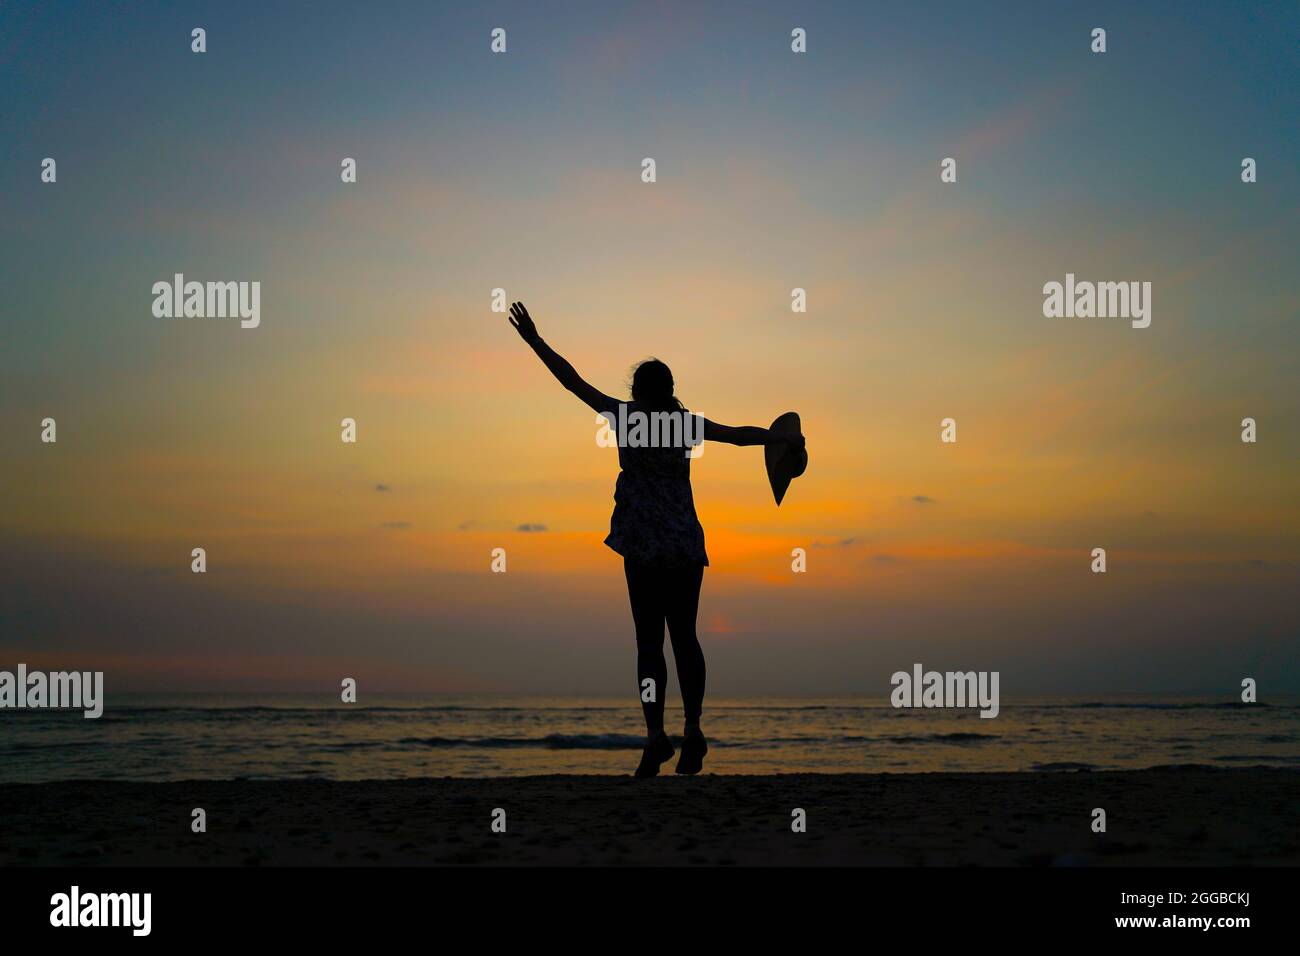 Rückansicht Silhouette einer jungen Frau, die bei Sonnenuntergang an einem britischen Strand tanzt, Sommerferien, ein Arm winkt in der Luft, ein Arm hält einen großen Sonnenhut. Stockfoto